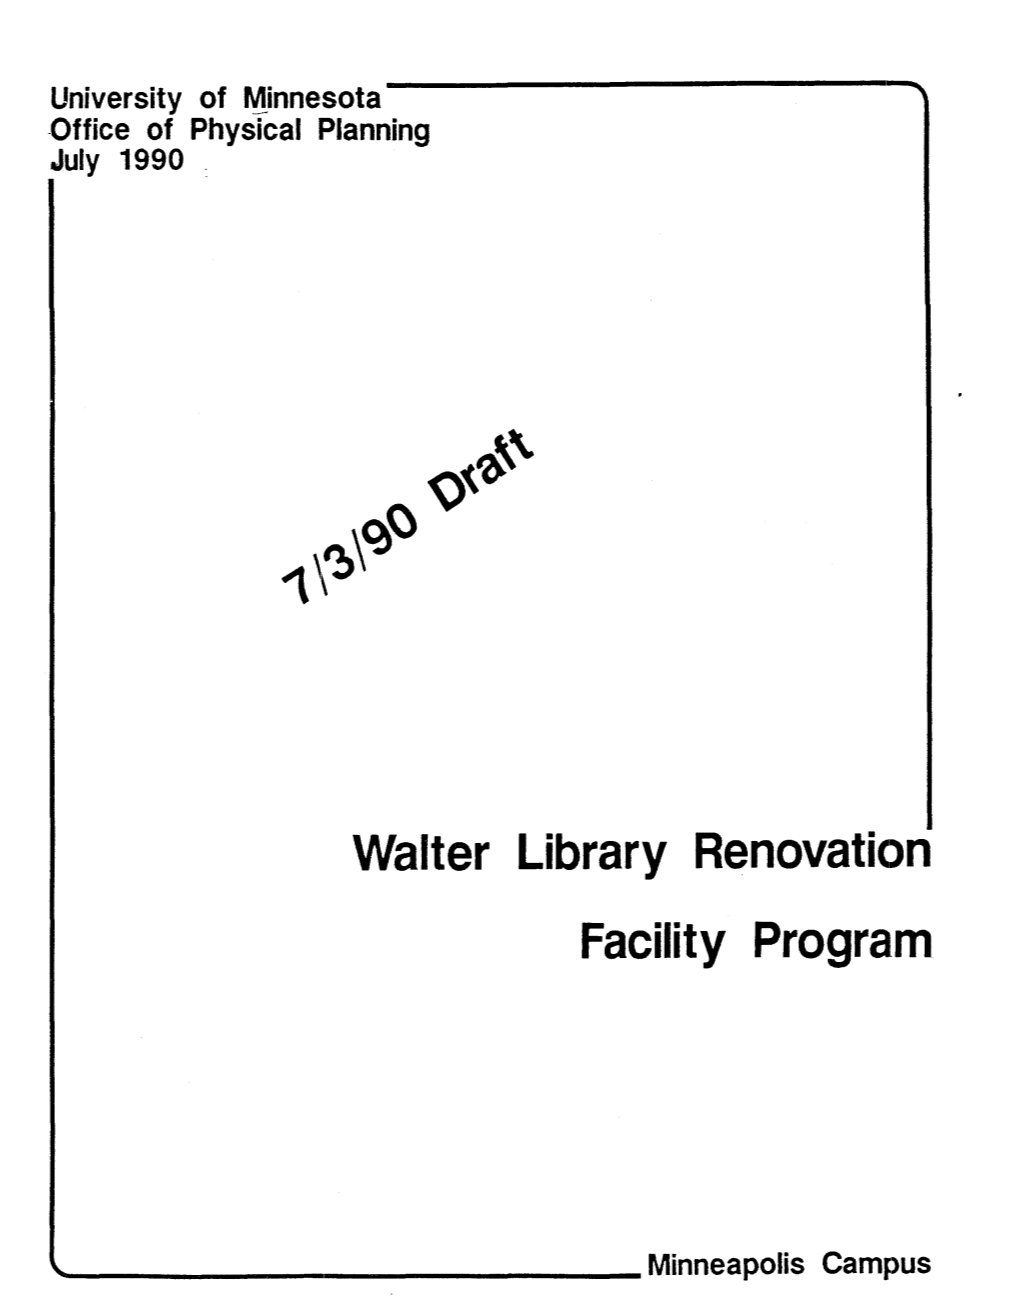 Walter Library Renovation Facility Program